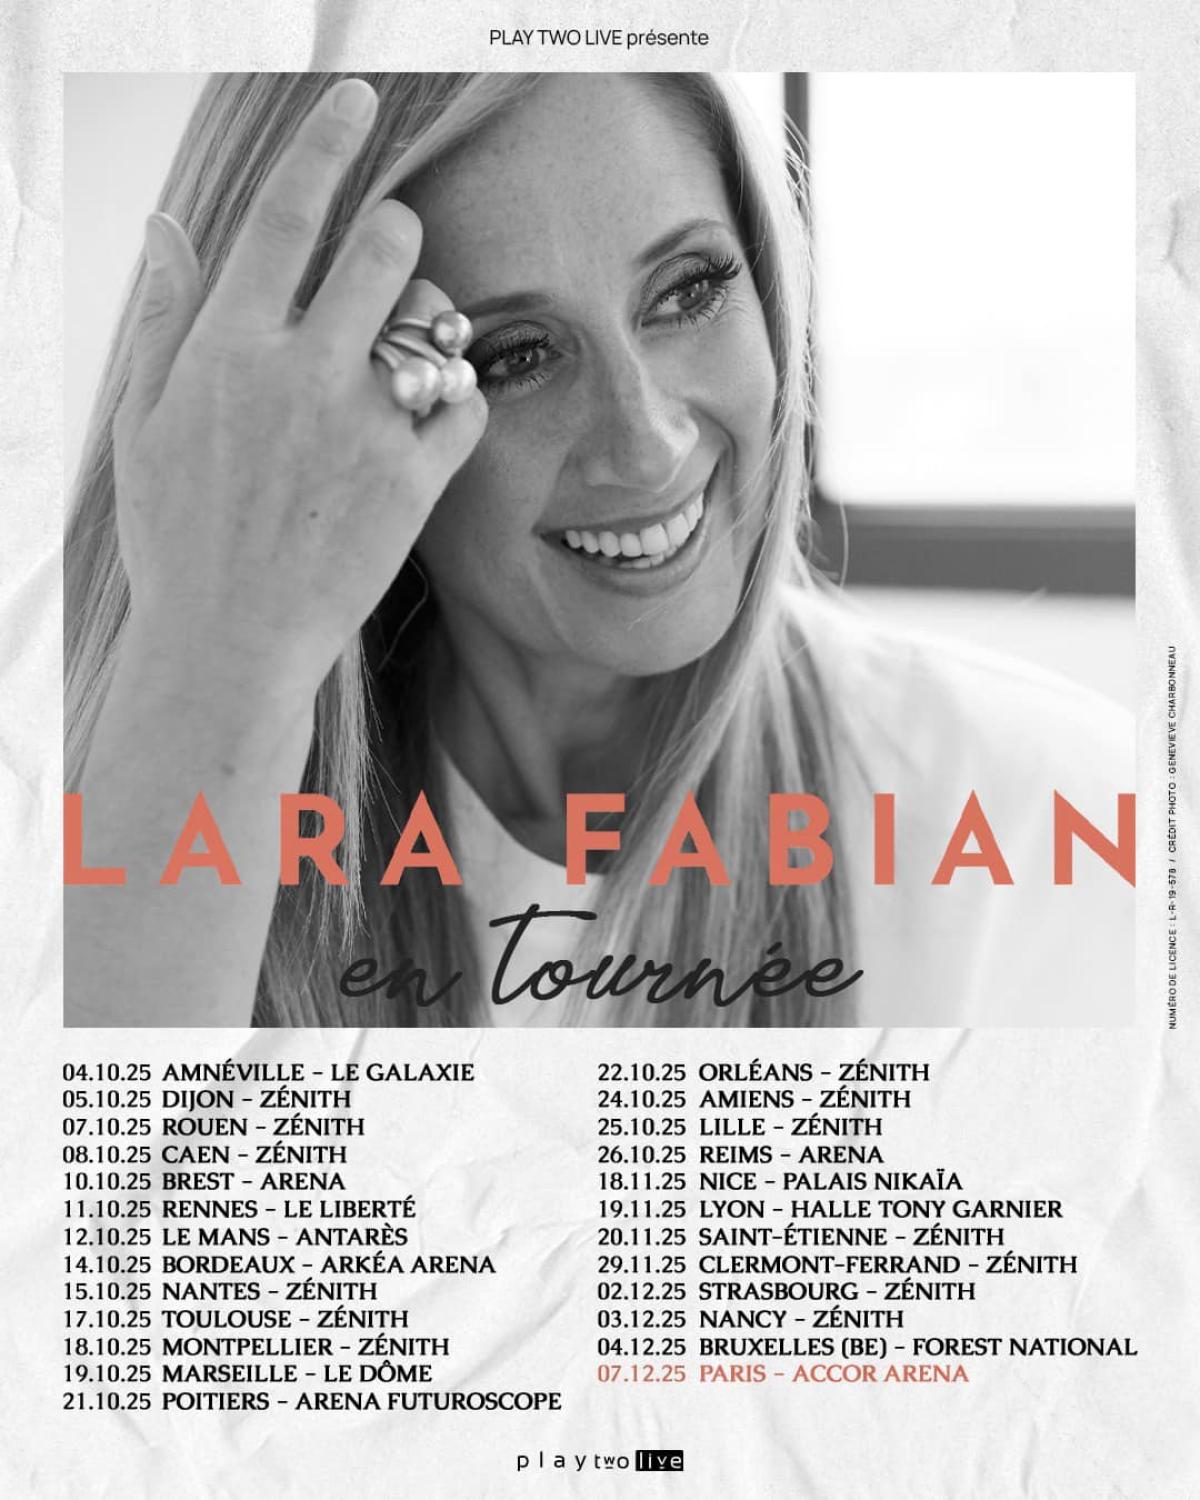 Lara Fabian at Arena Futuroscope Tickets